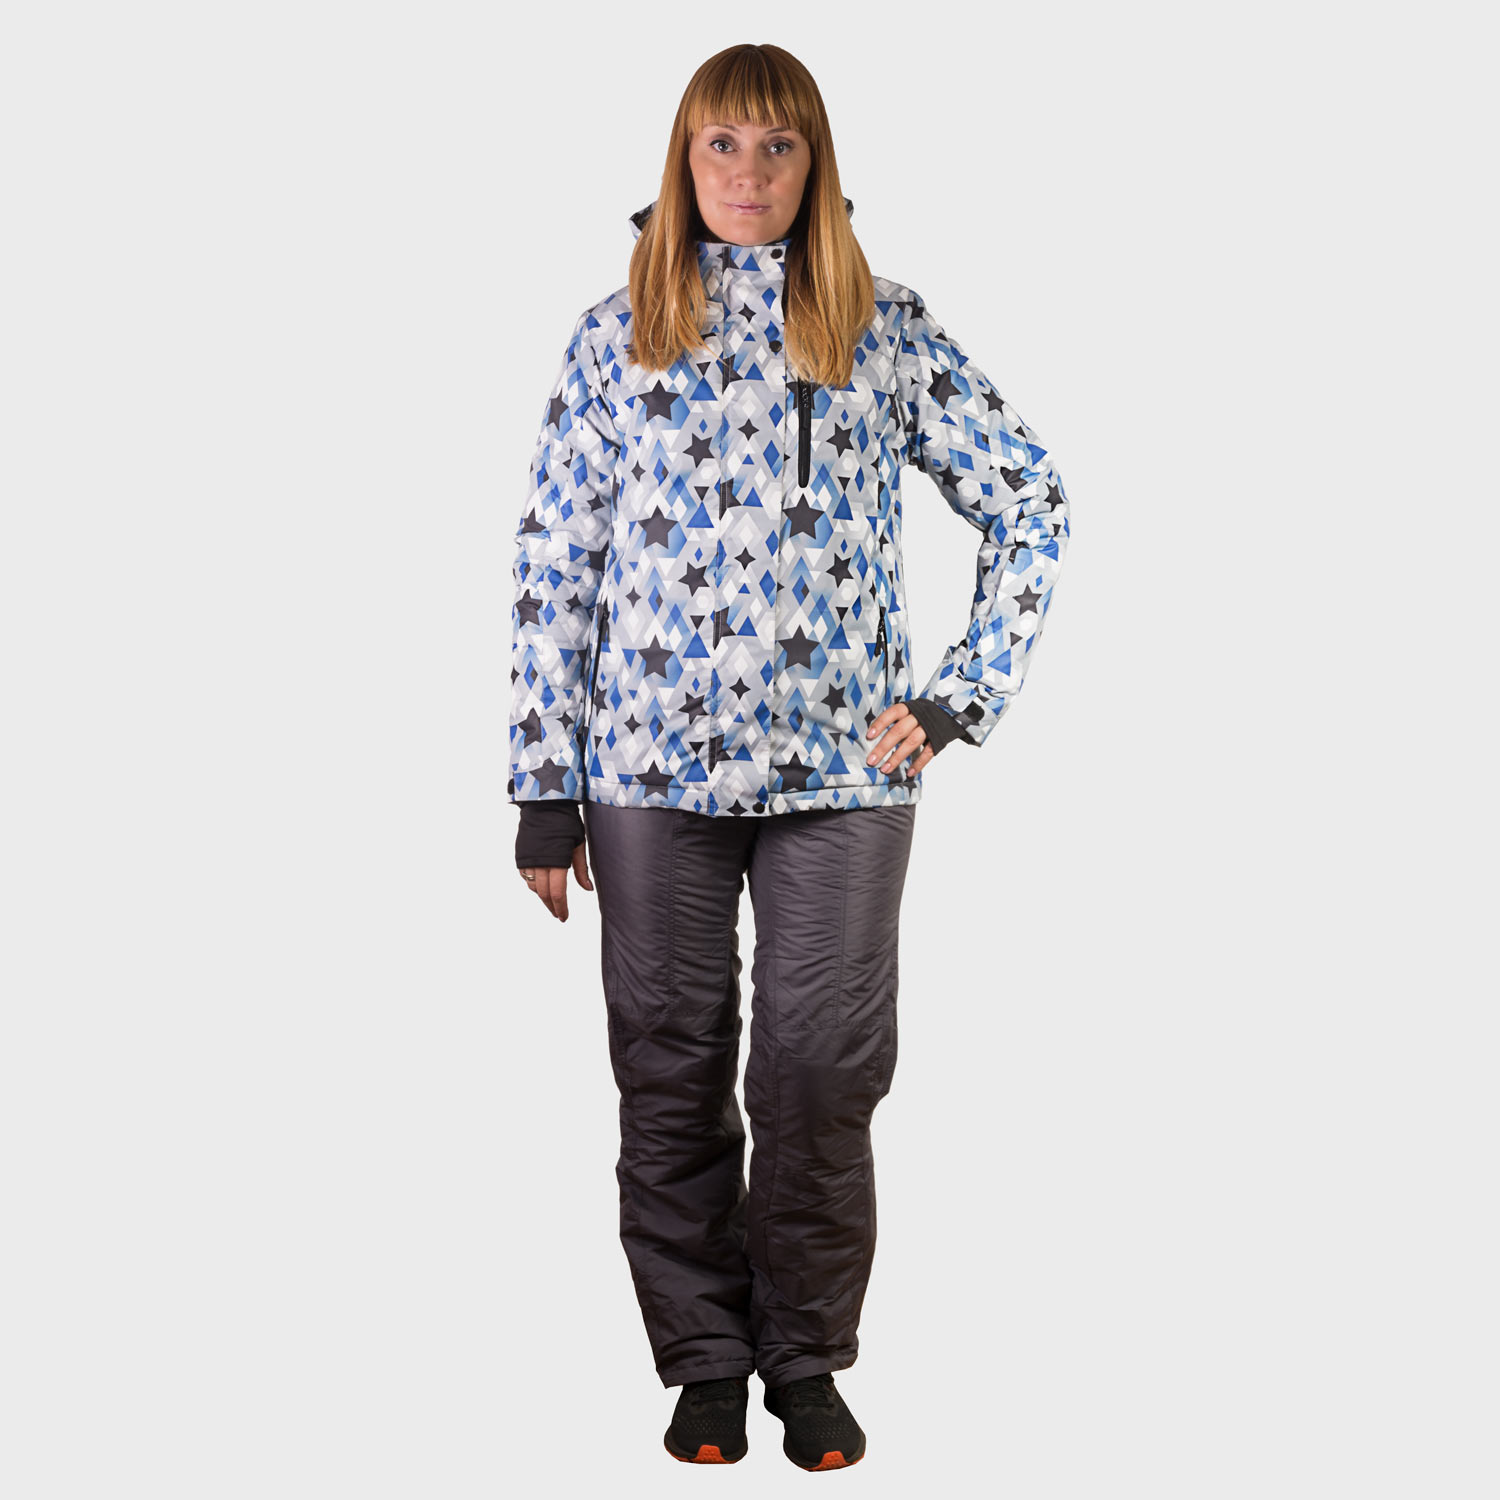 Женская яркая зимняя горнолыжная куртка, красивый женский сноубордический костюм, горнолыжная экипировка, горнолыжная одежда для прогулок